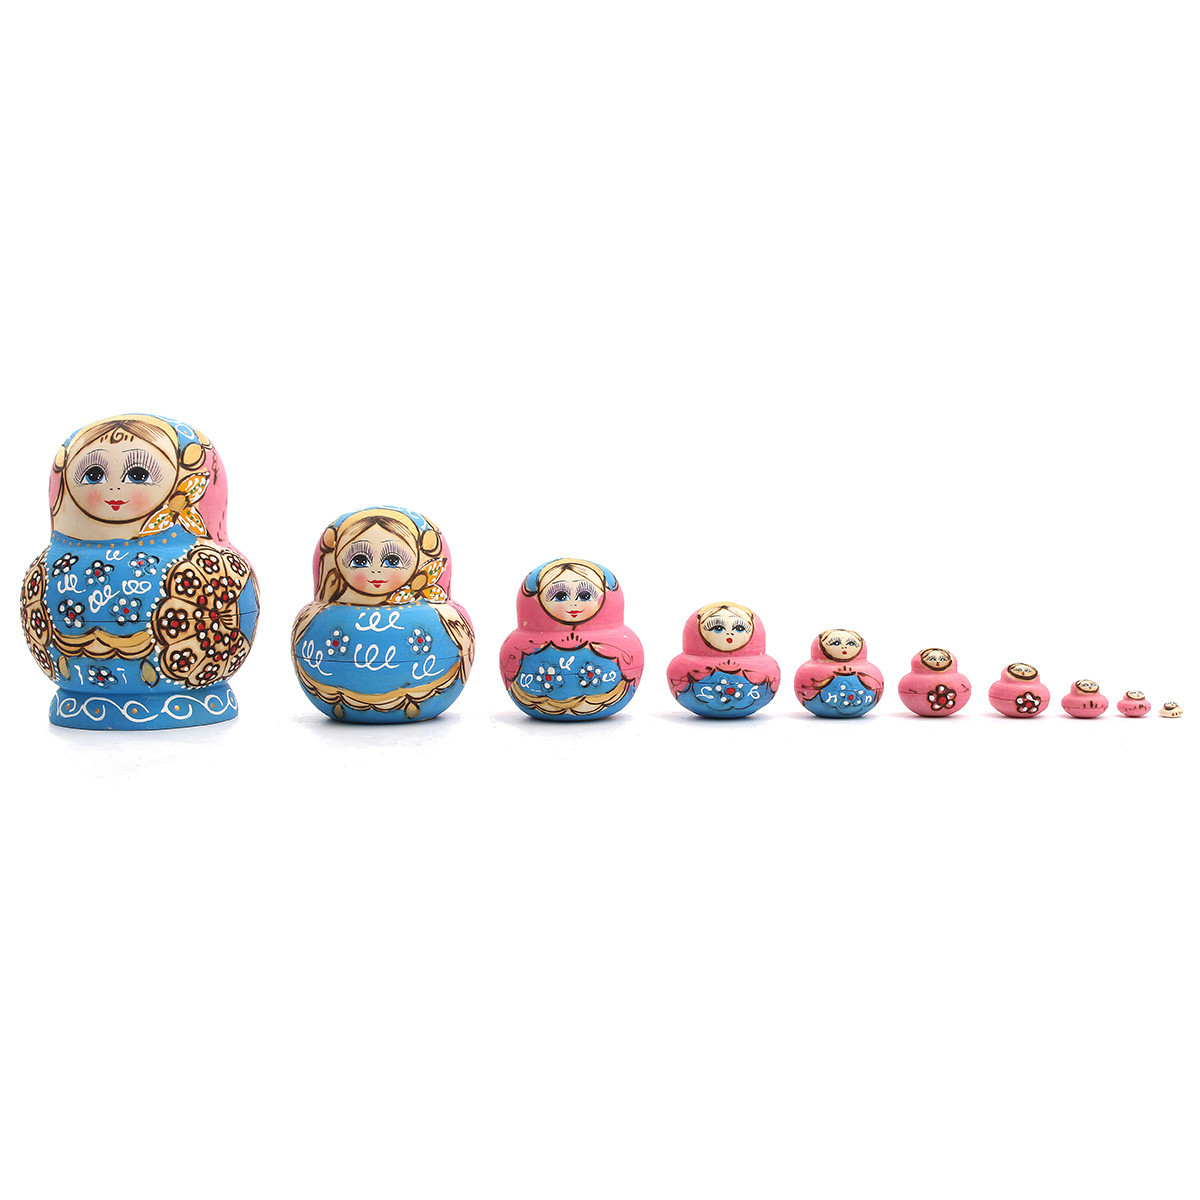 

10pcs ручной росписью голубые куклы установить деревянный русский вложенности Babushka матрешку